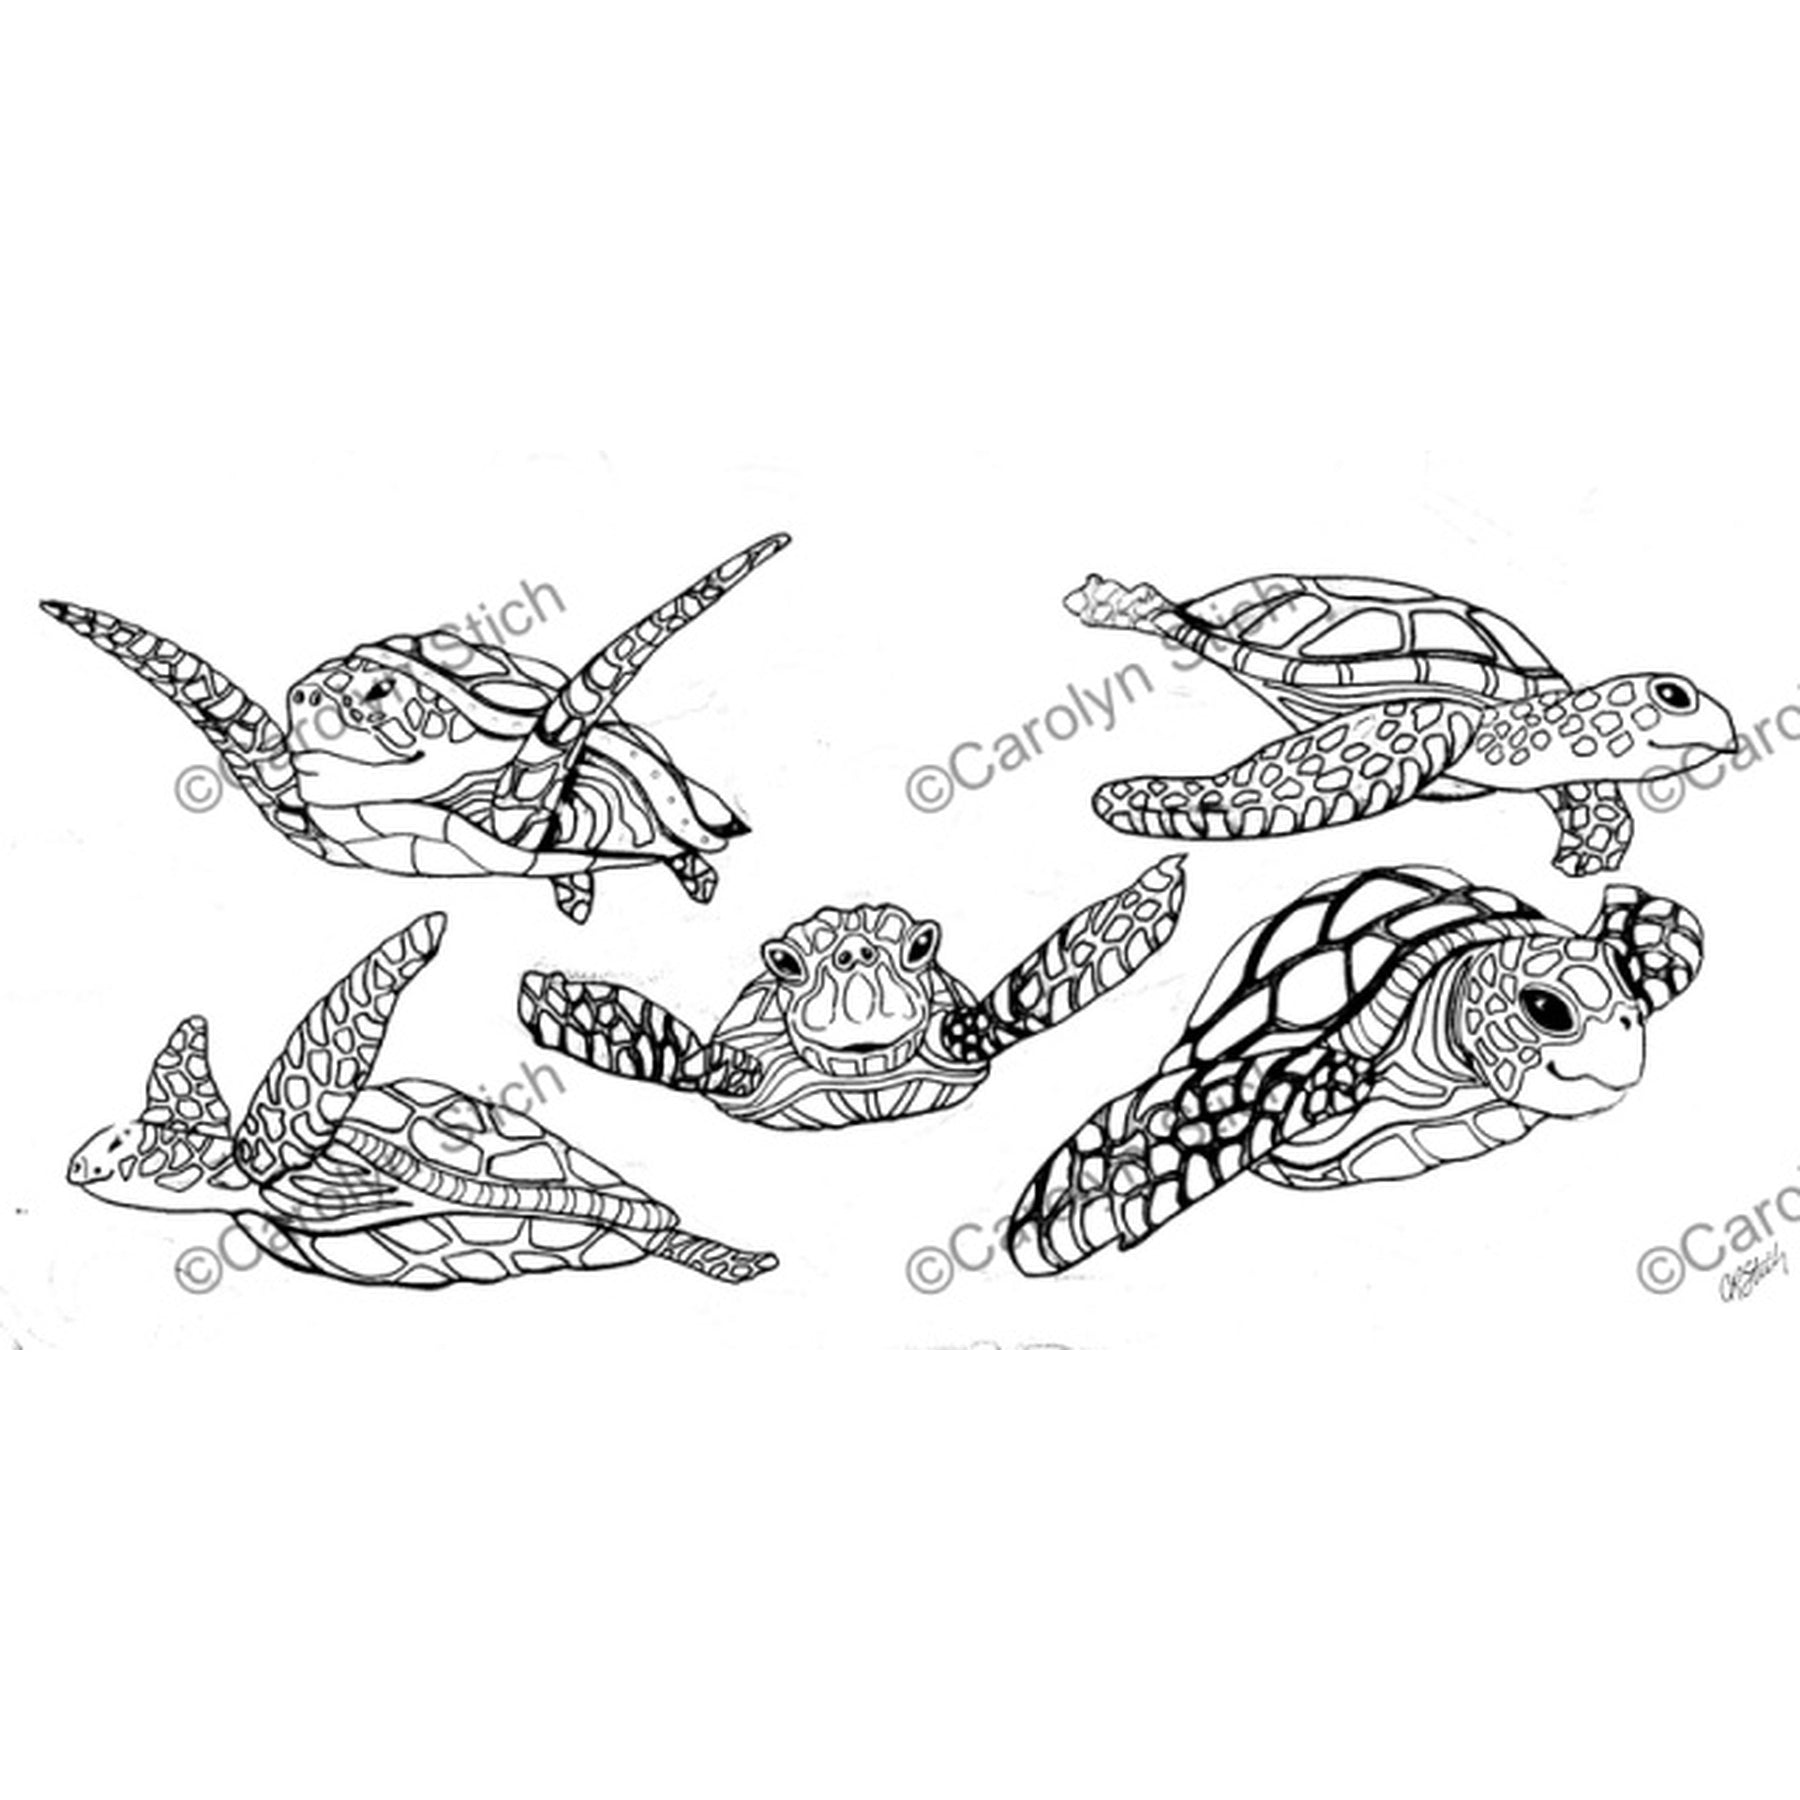 Sea Turtles, rug hooking pattern